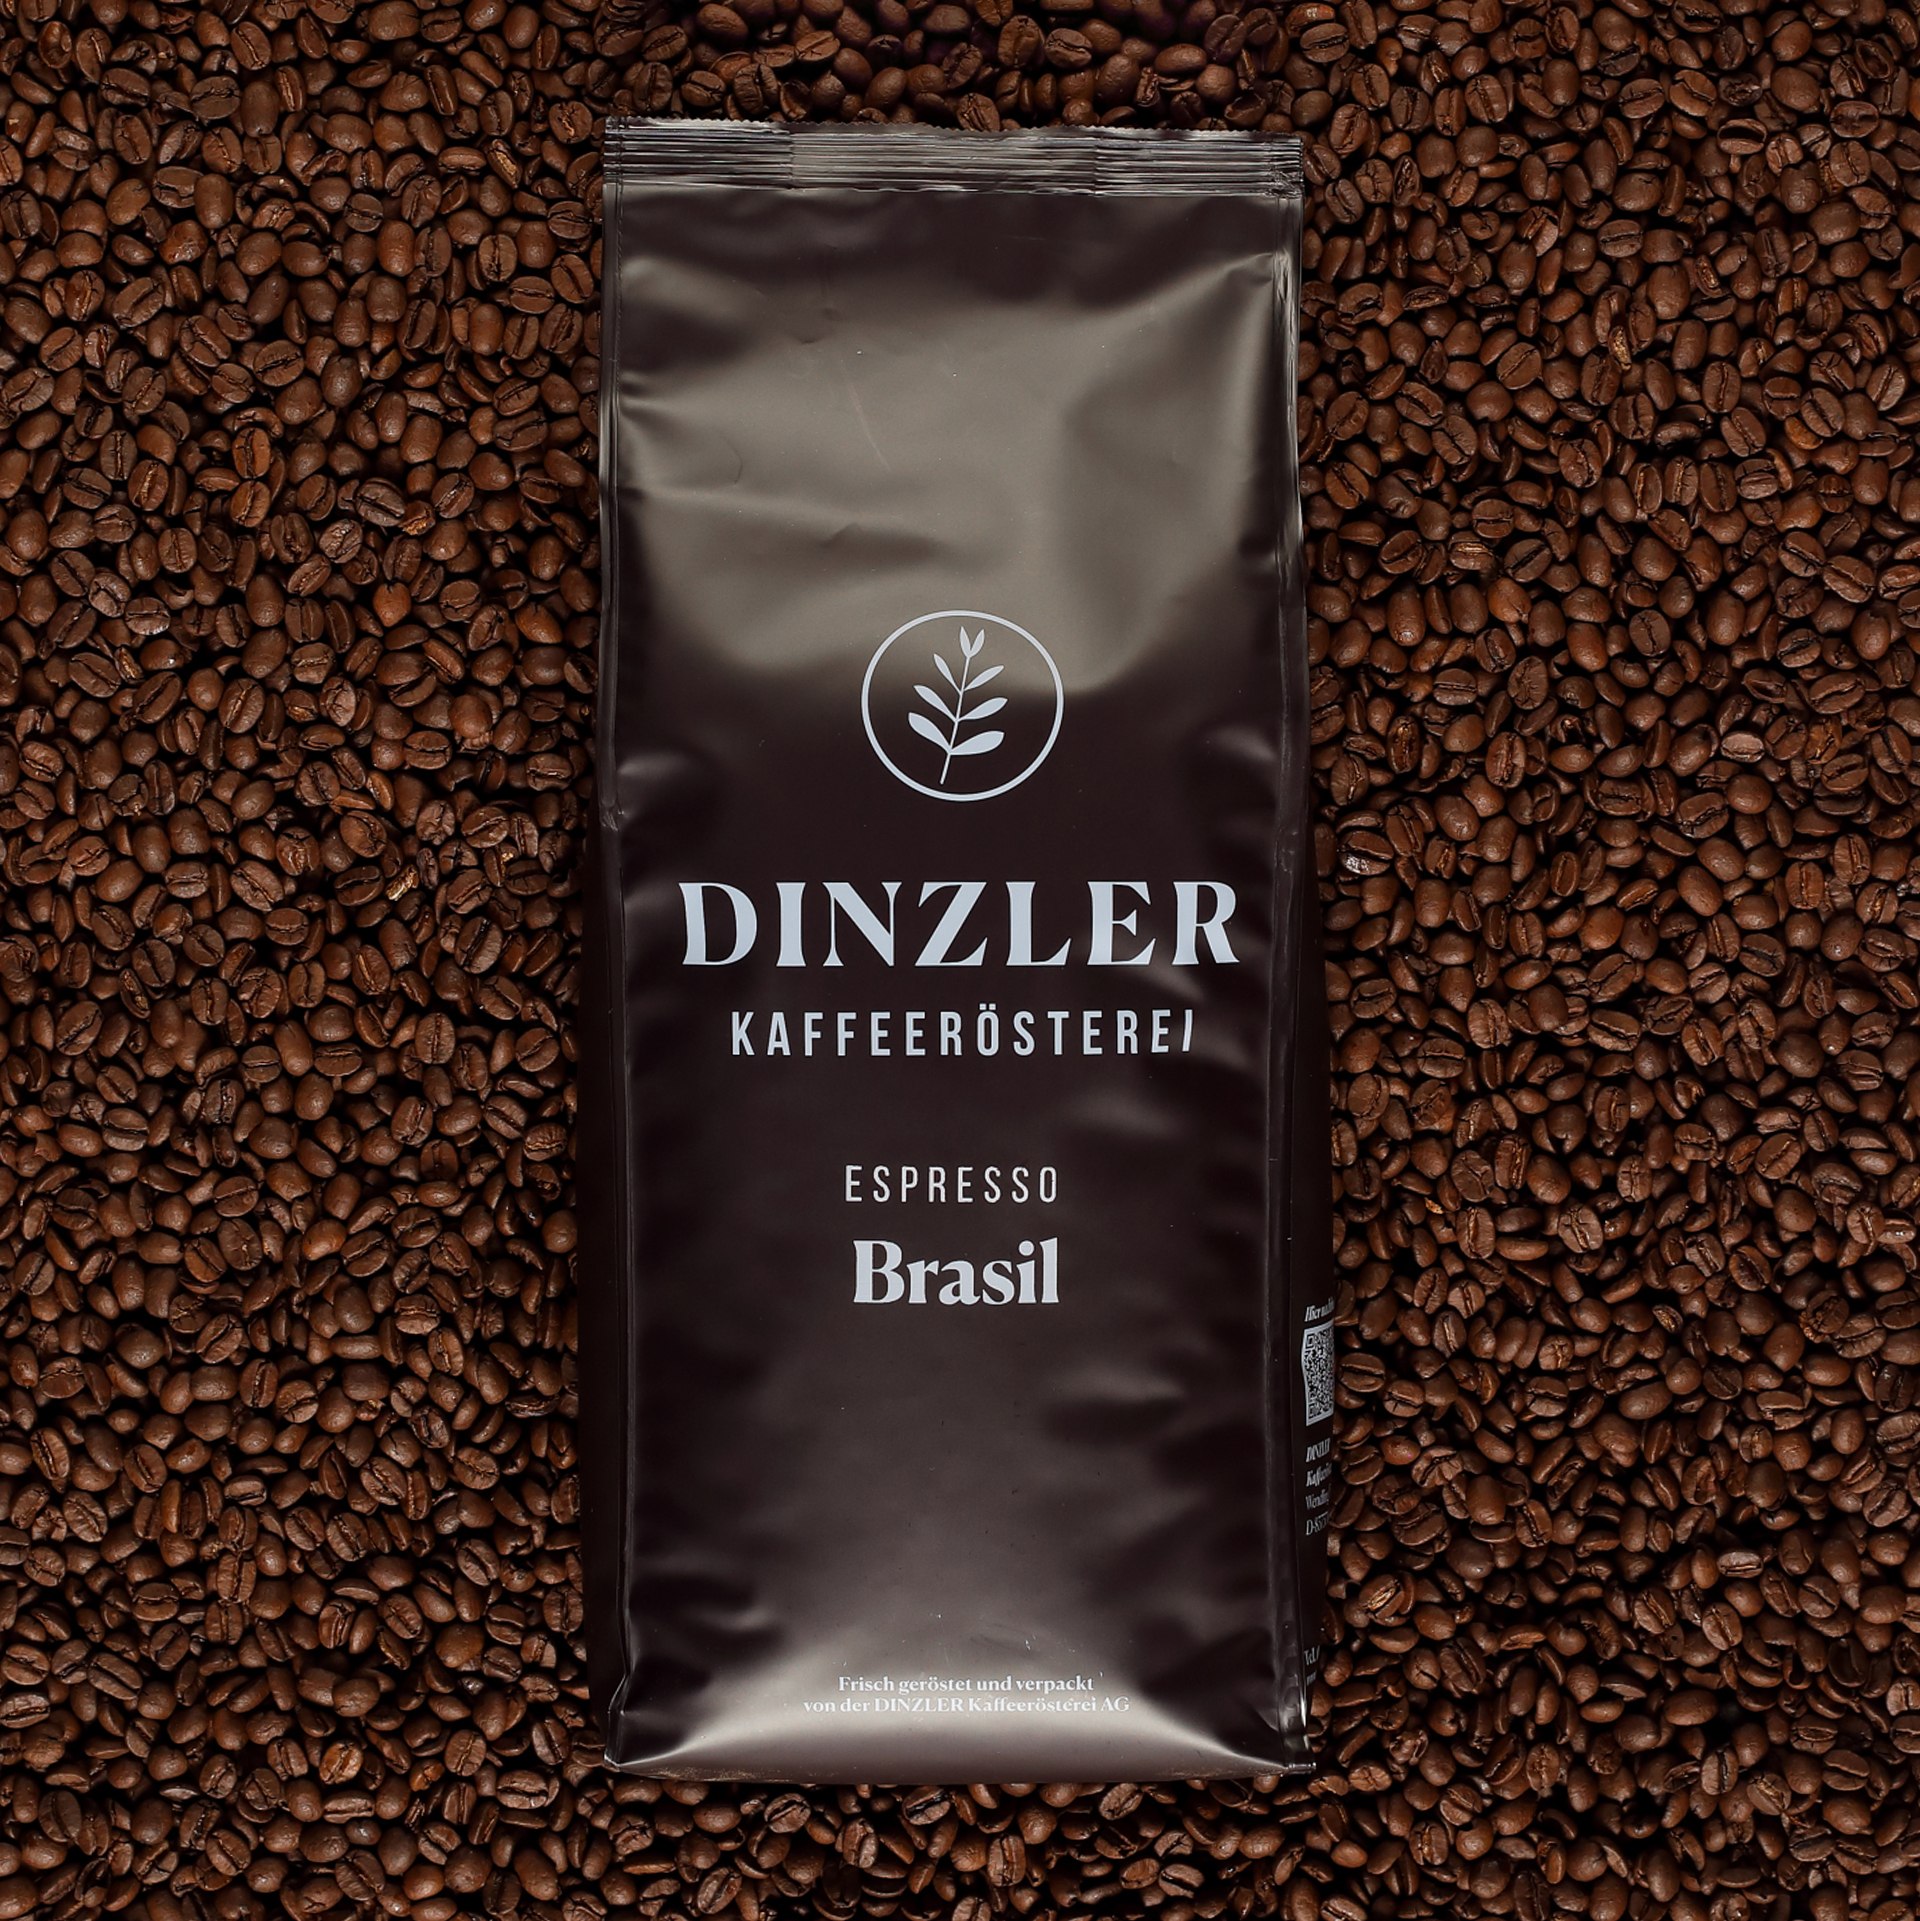 Produktbild DINZLER Espresso Brasil| DINZLER Kaffeerösterei